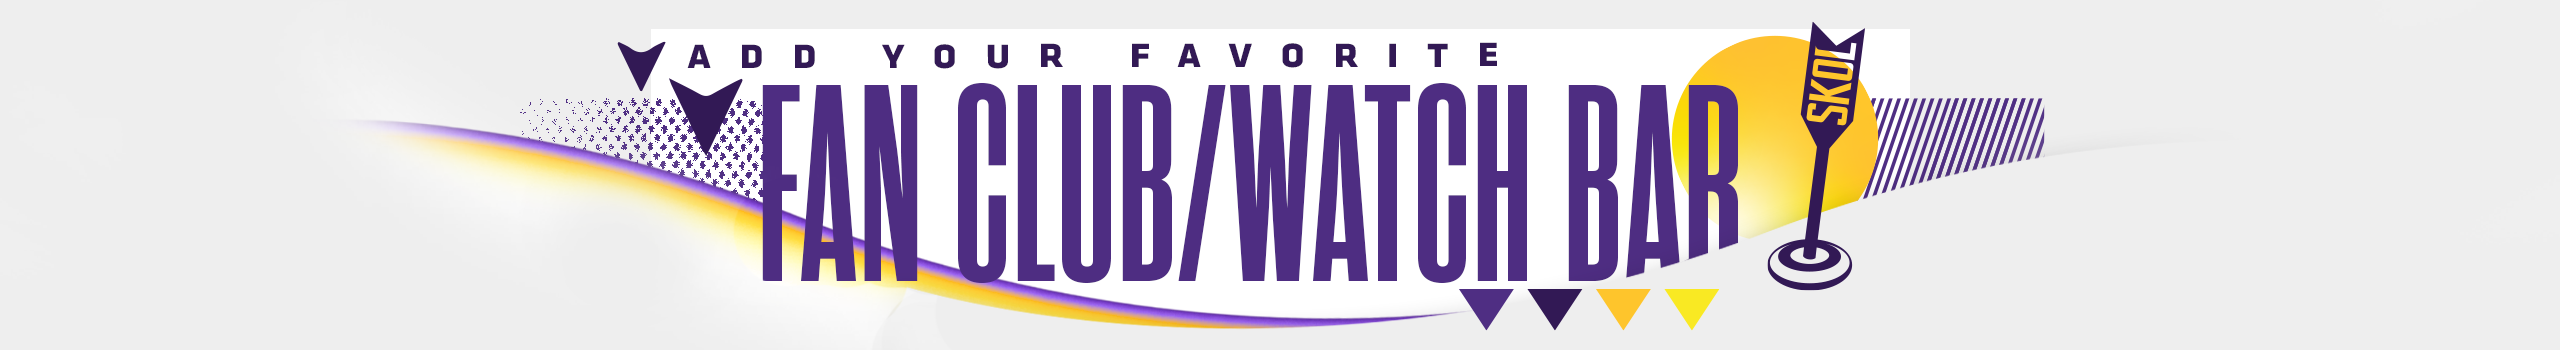 Fan Clubs & Watch Bars  Minnesota Vikings –